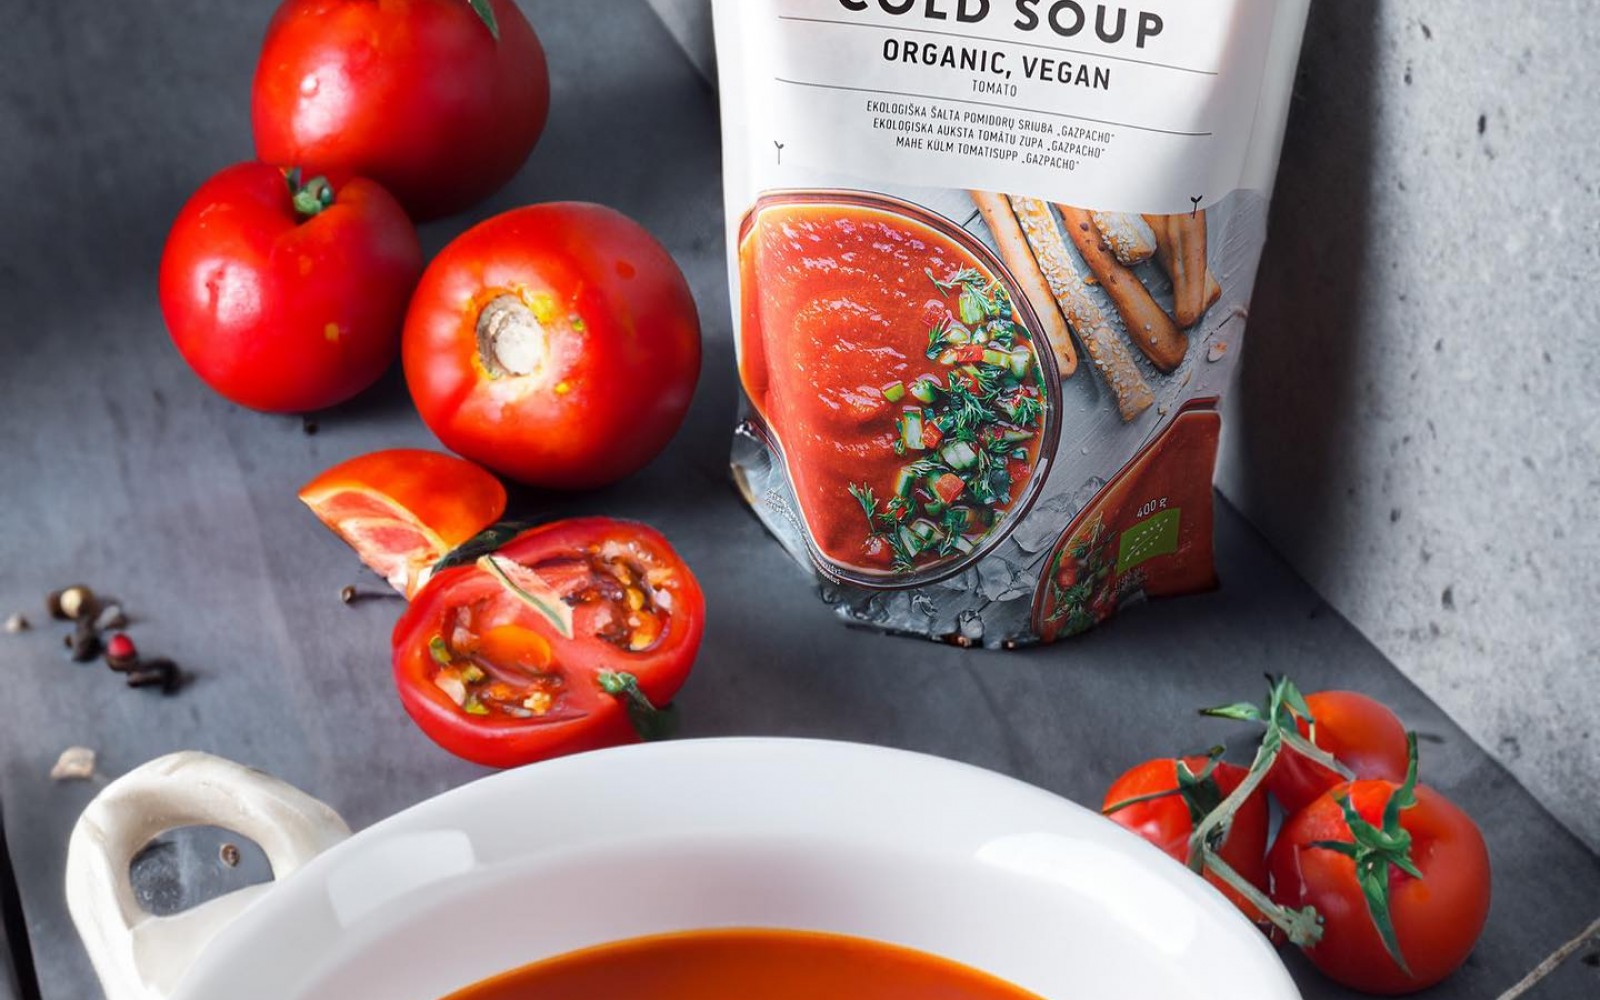 Frissítsd fel magad ebben a nagy forróságban egy bio gazpacho levessel